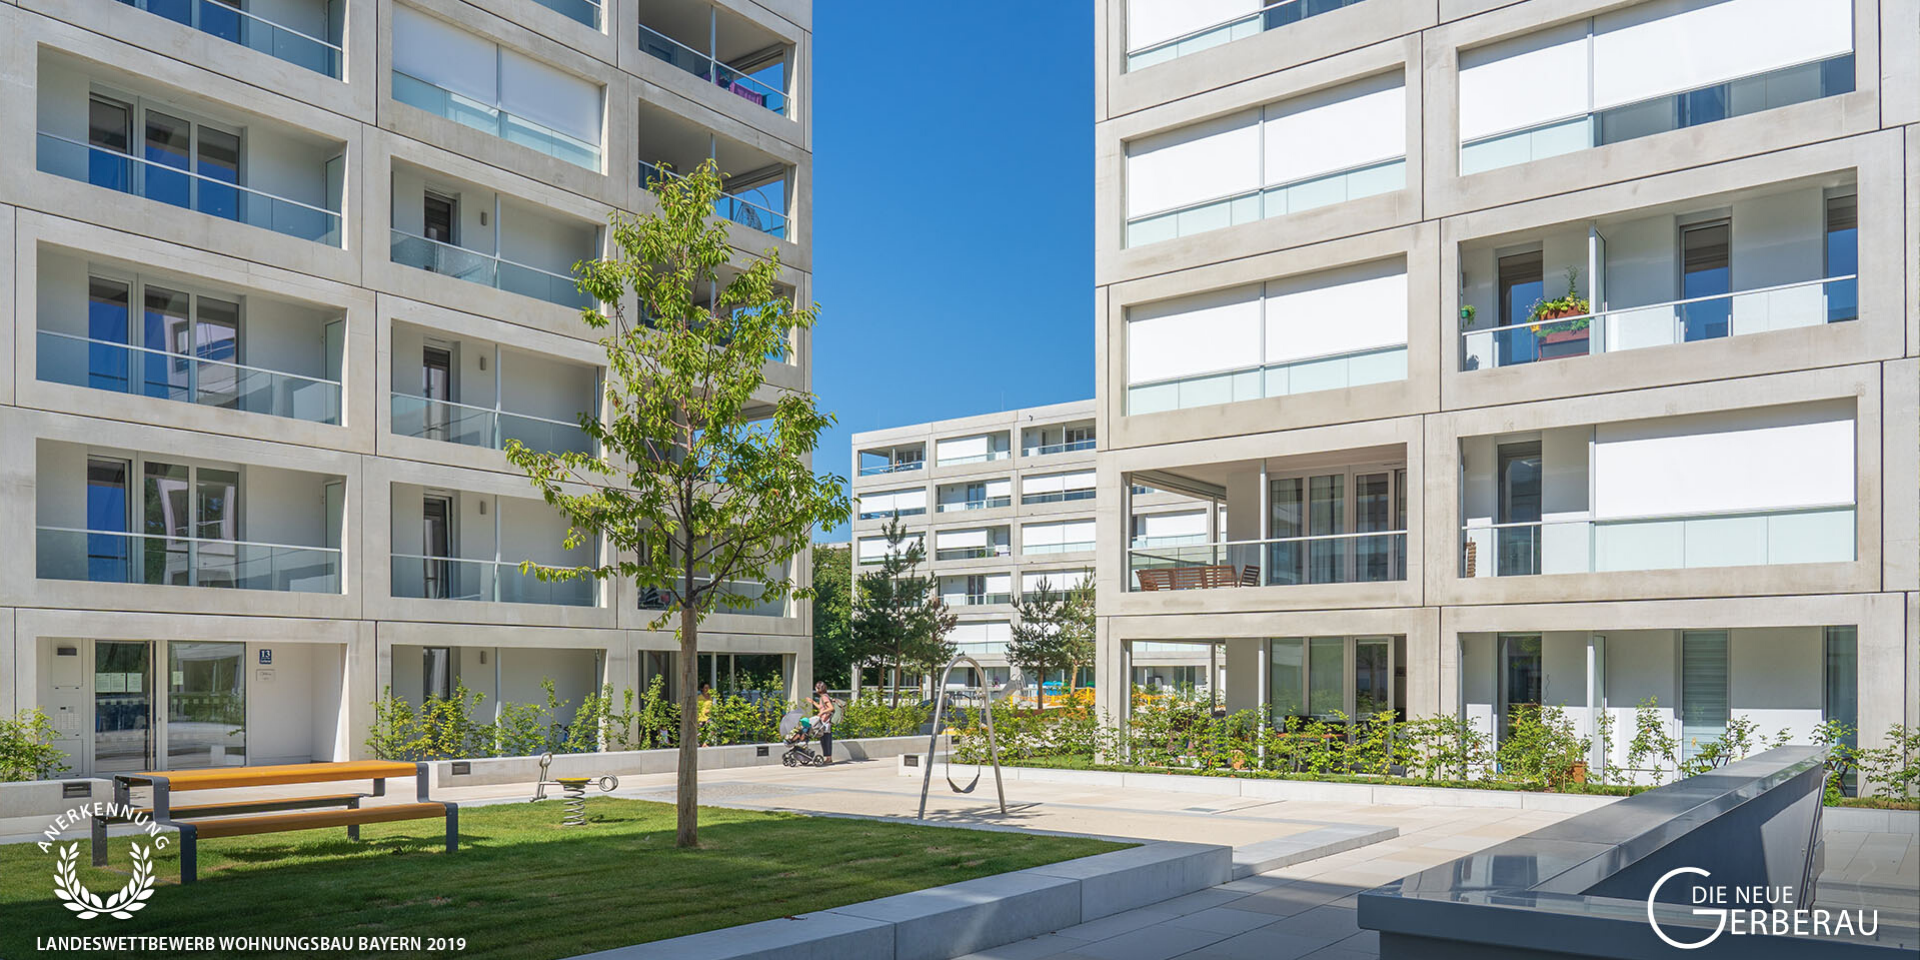 Landeswettbewerb Wohnungsbau Bayern 2019: „Die neue Gerberau“ erhält Anerkennung